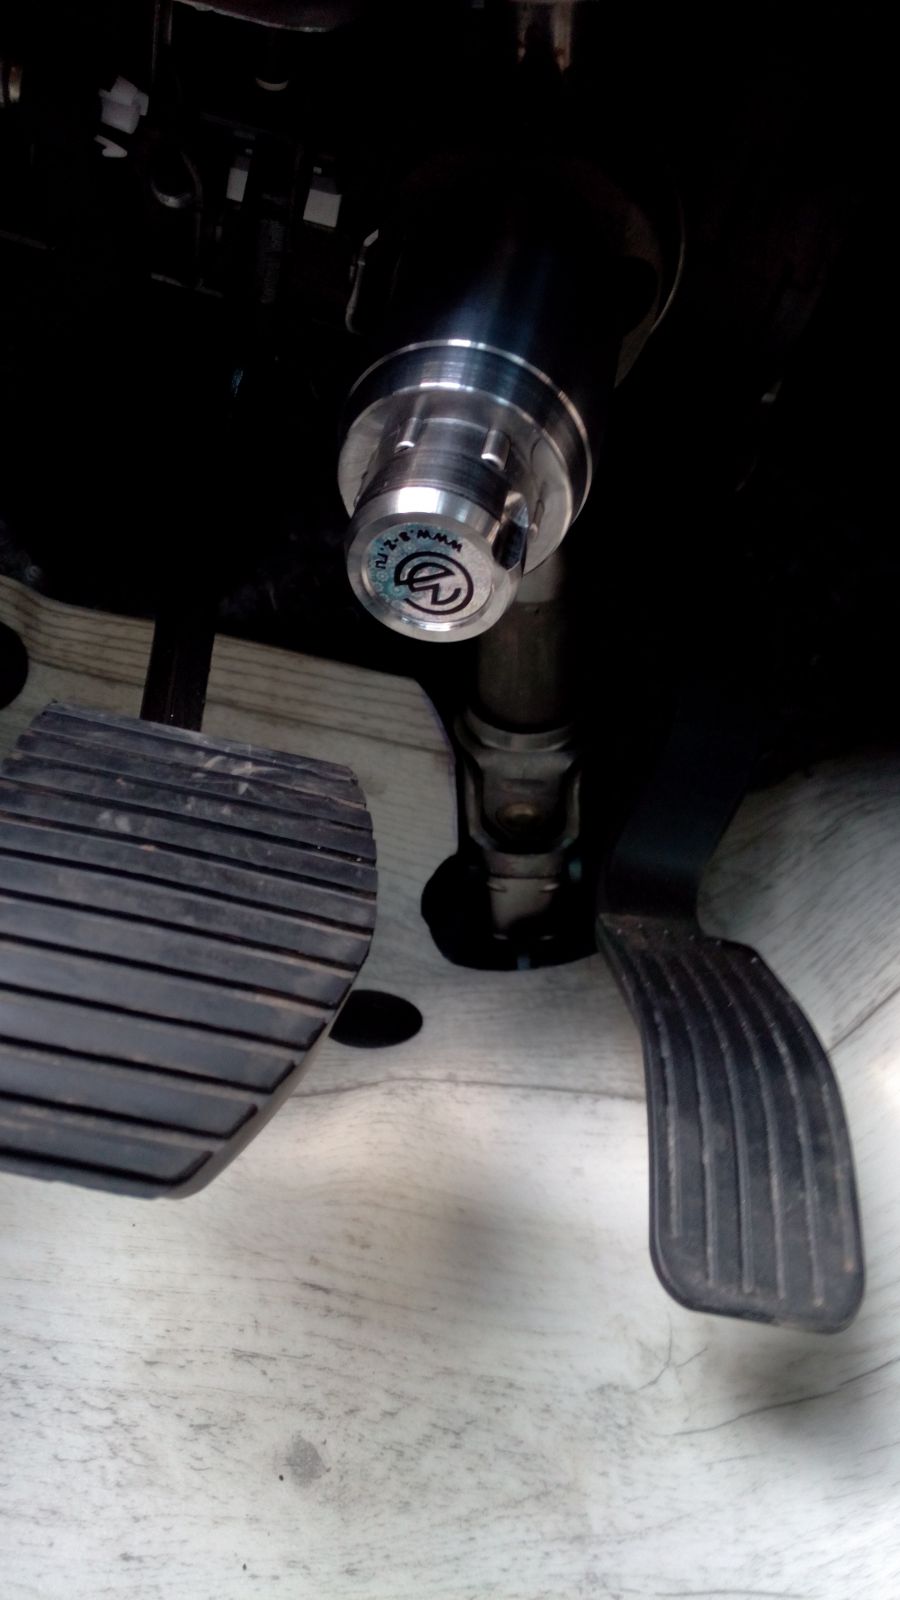 Блокиратор рулевого вала Перехват-Универсал установленный на автомобиле Peugeot 301